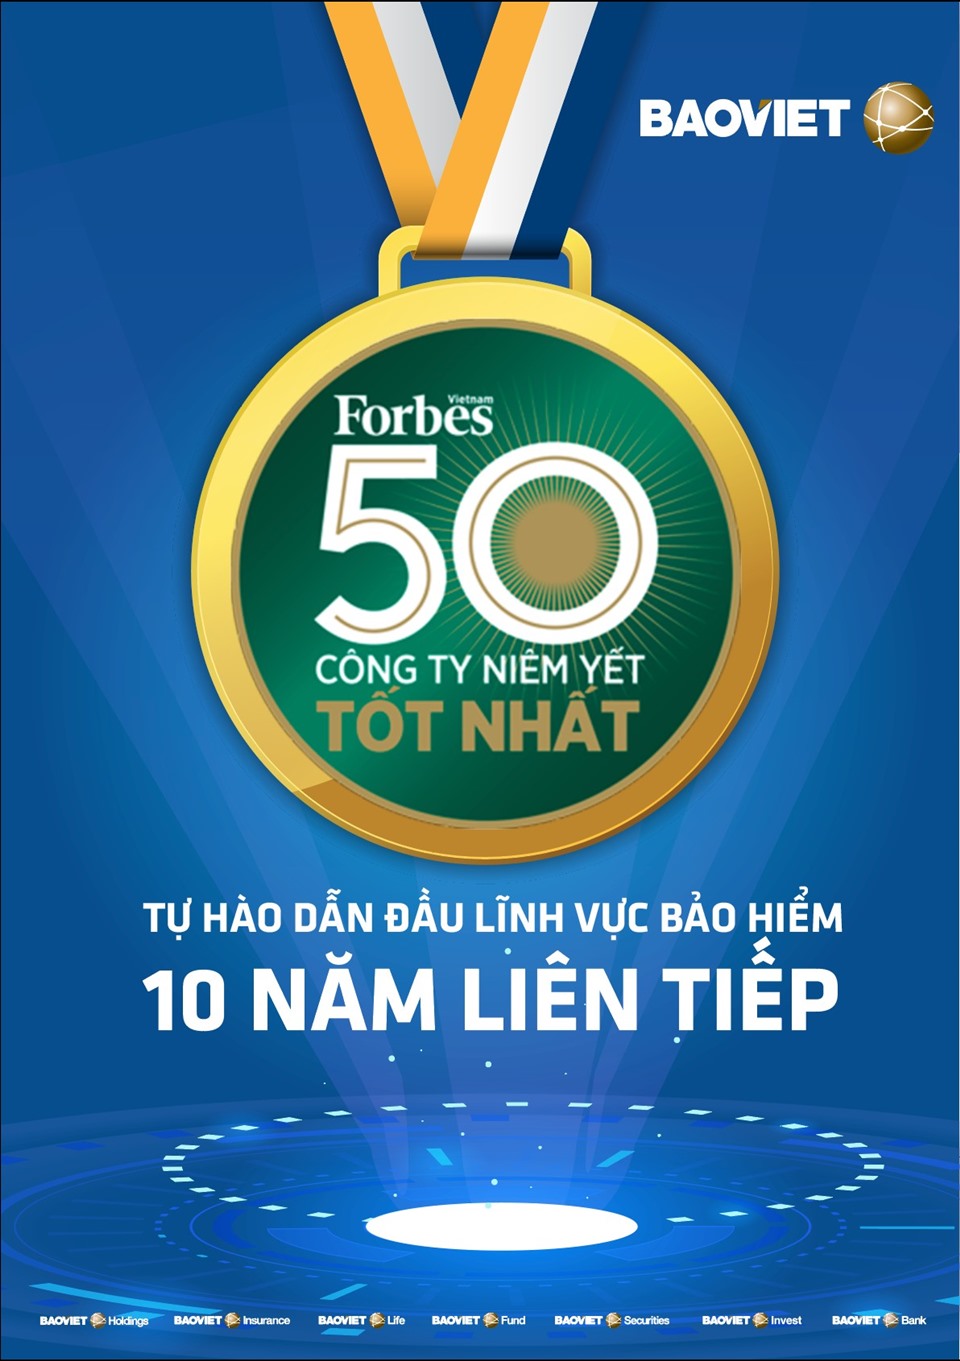 Bảo Việt - 10 năm liên tiếp trong “Danh sách 50 công ty niêm yết tốt nhất”.